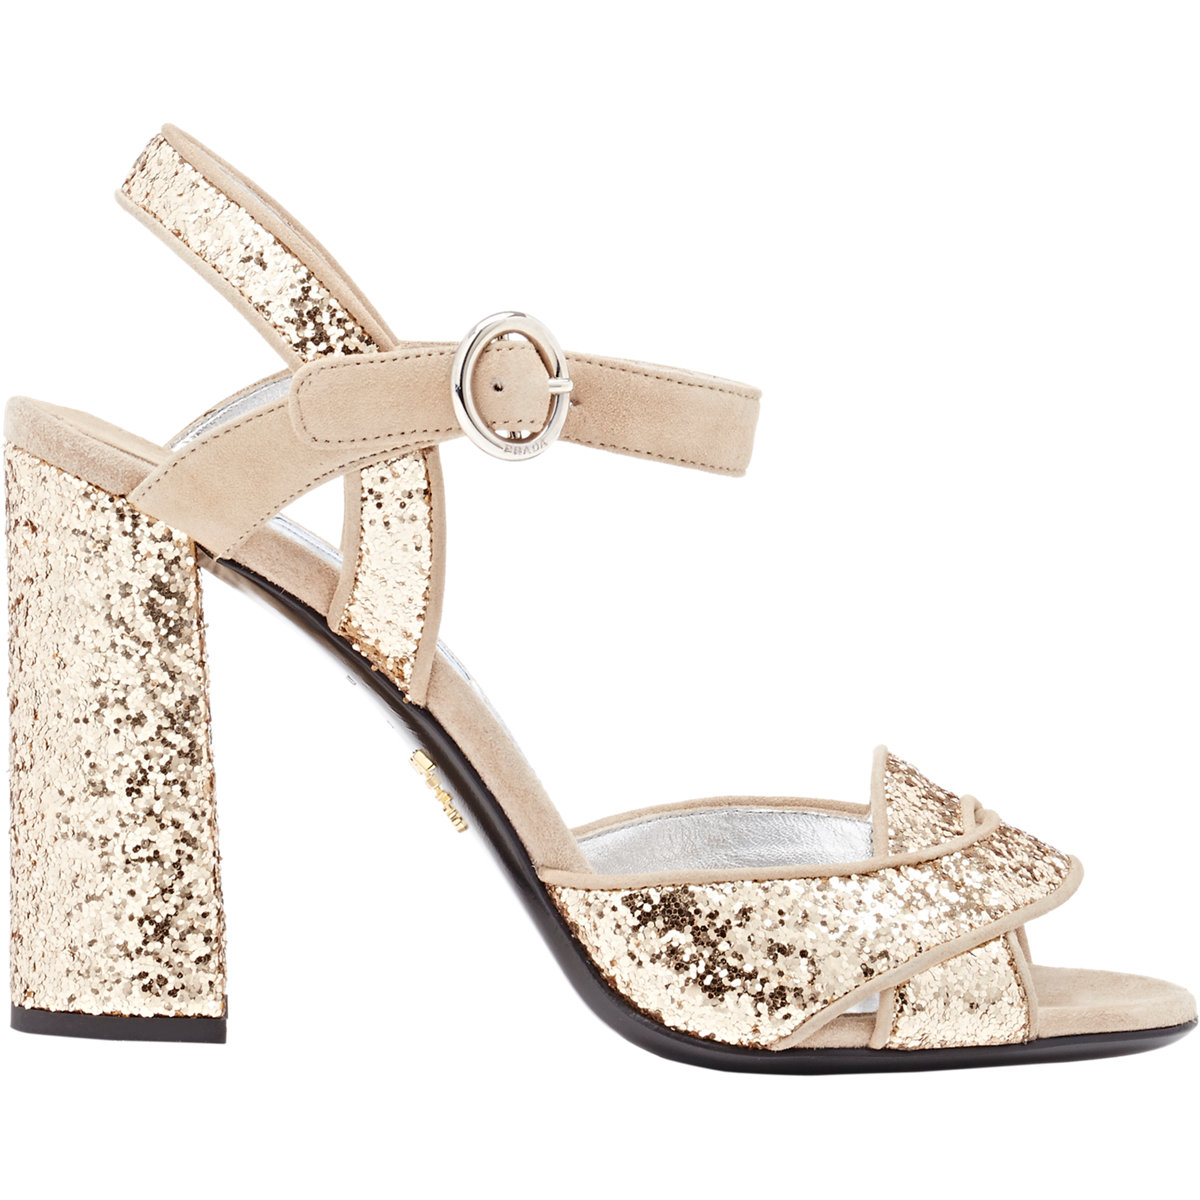 Lyst - Prada Suede & Glitter Ankle-strap Sandals in Metallic